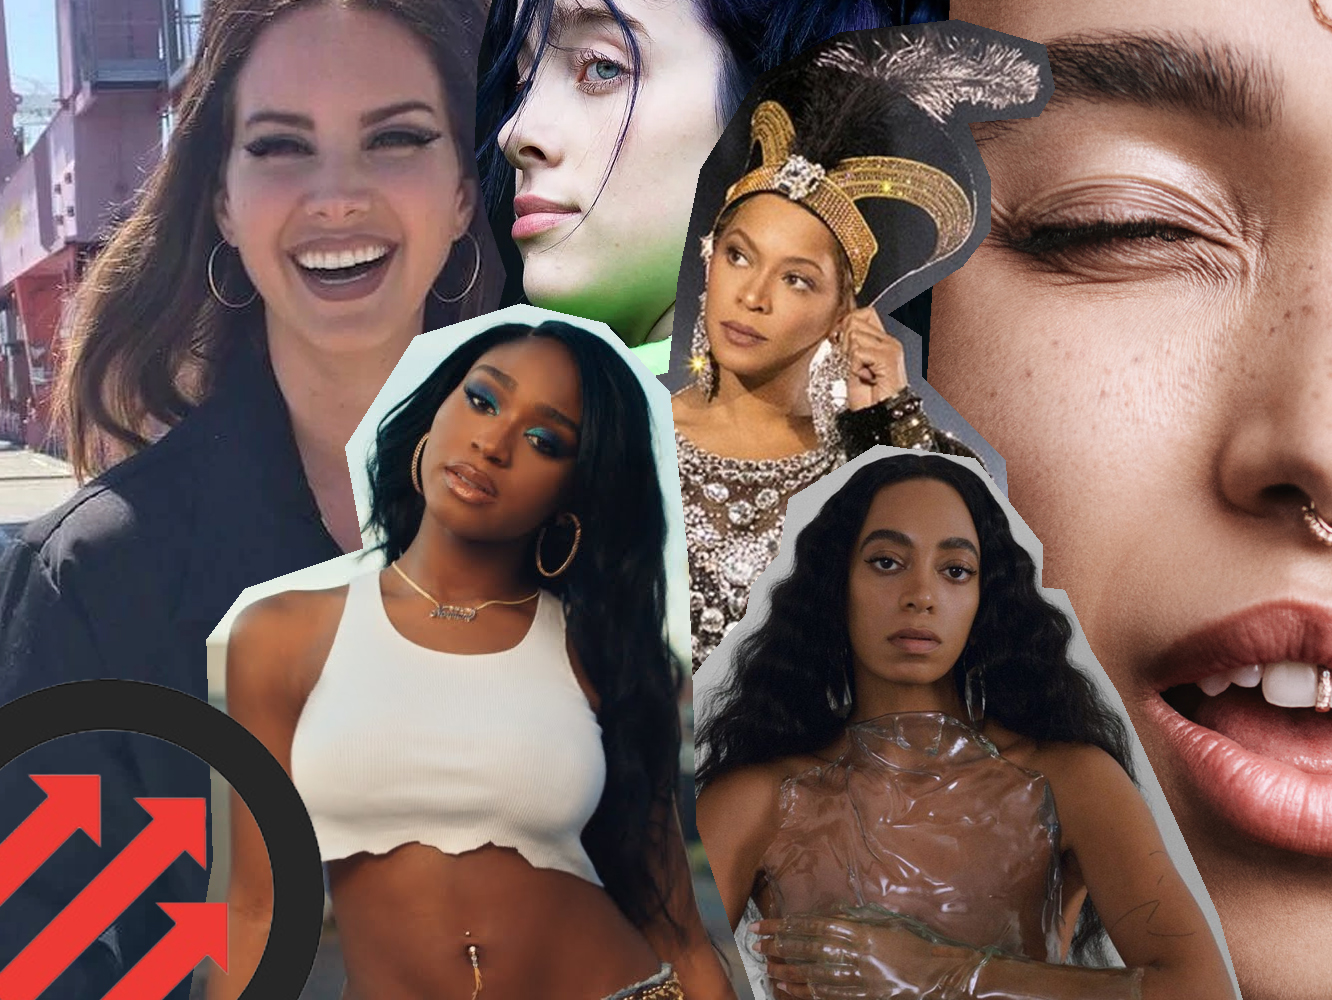  Pitchfork elige las mejores canciones y los mejores discos de 2019: Lana Del Rey, Beyoncé o Normani, en la lista